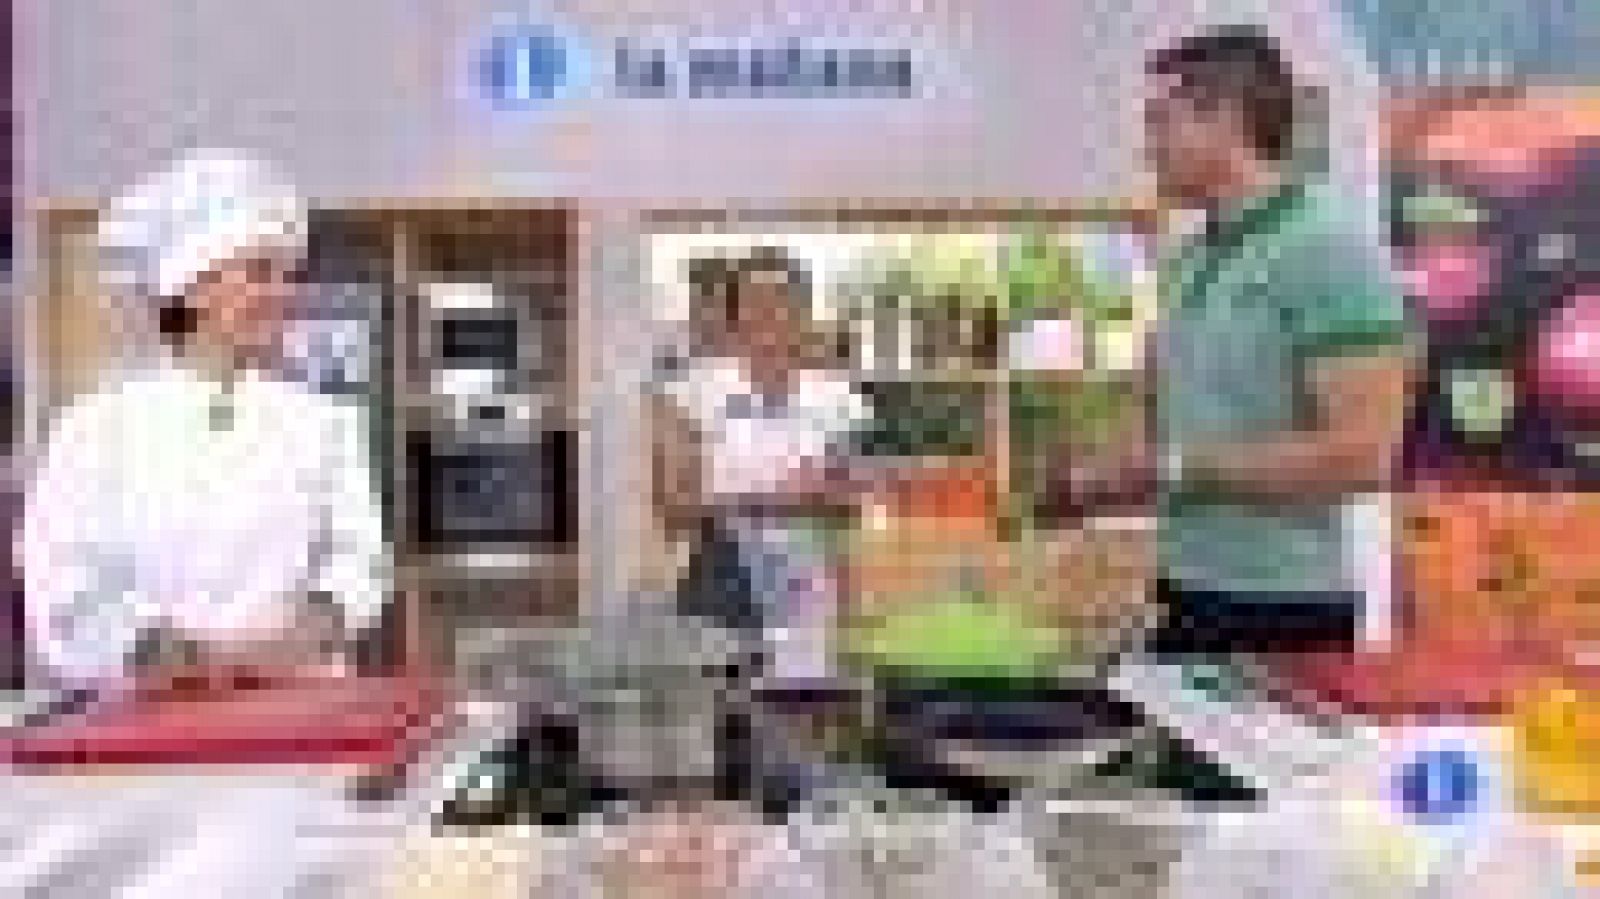 Saber Cocinar - Ensalada de pasta y bacalao (23/08/11)